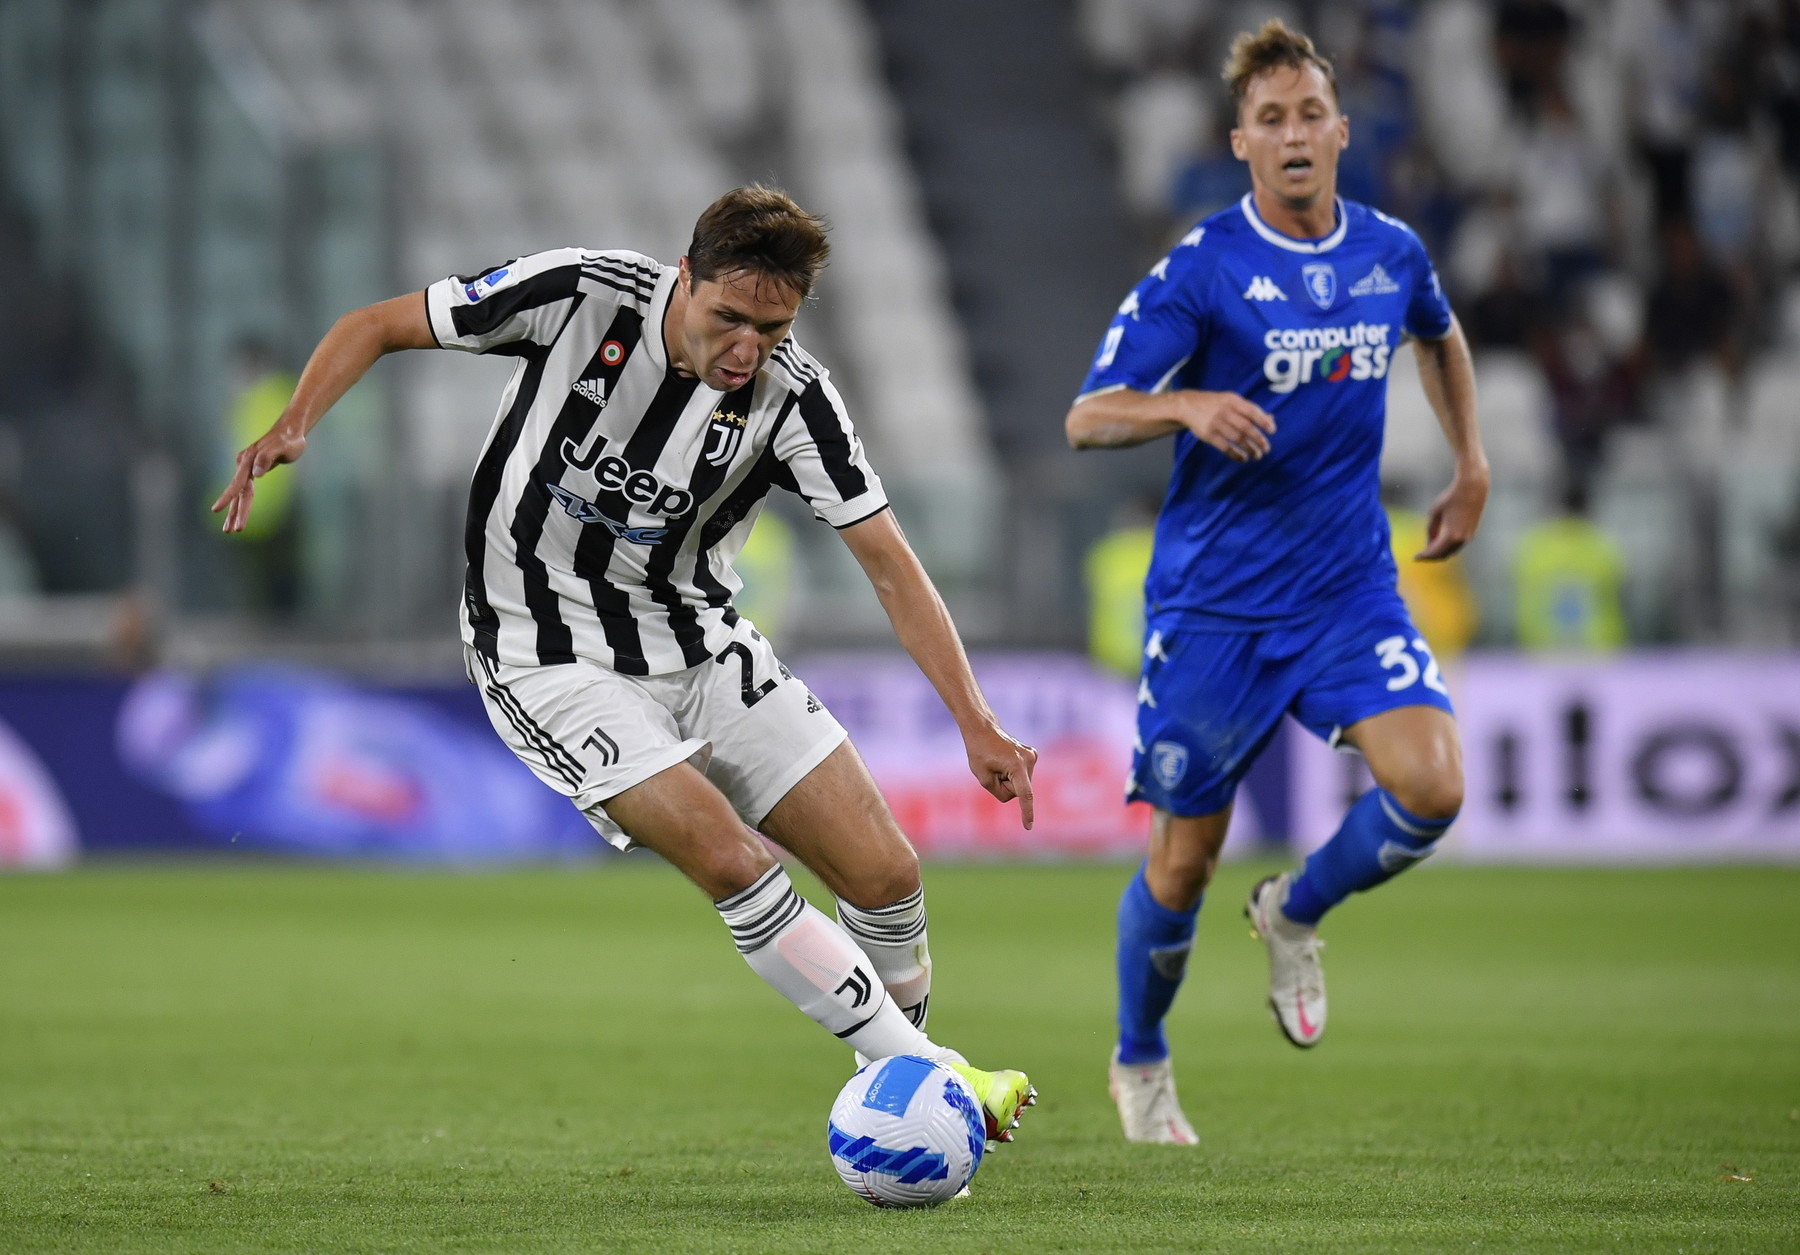 Juventus – Empoli : Les compositions officielles de départ avec Vlahovic et Kean titulaires